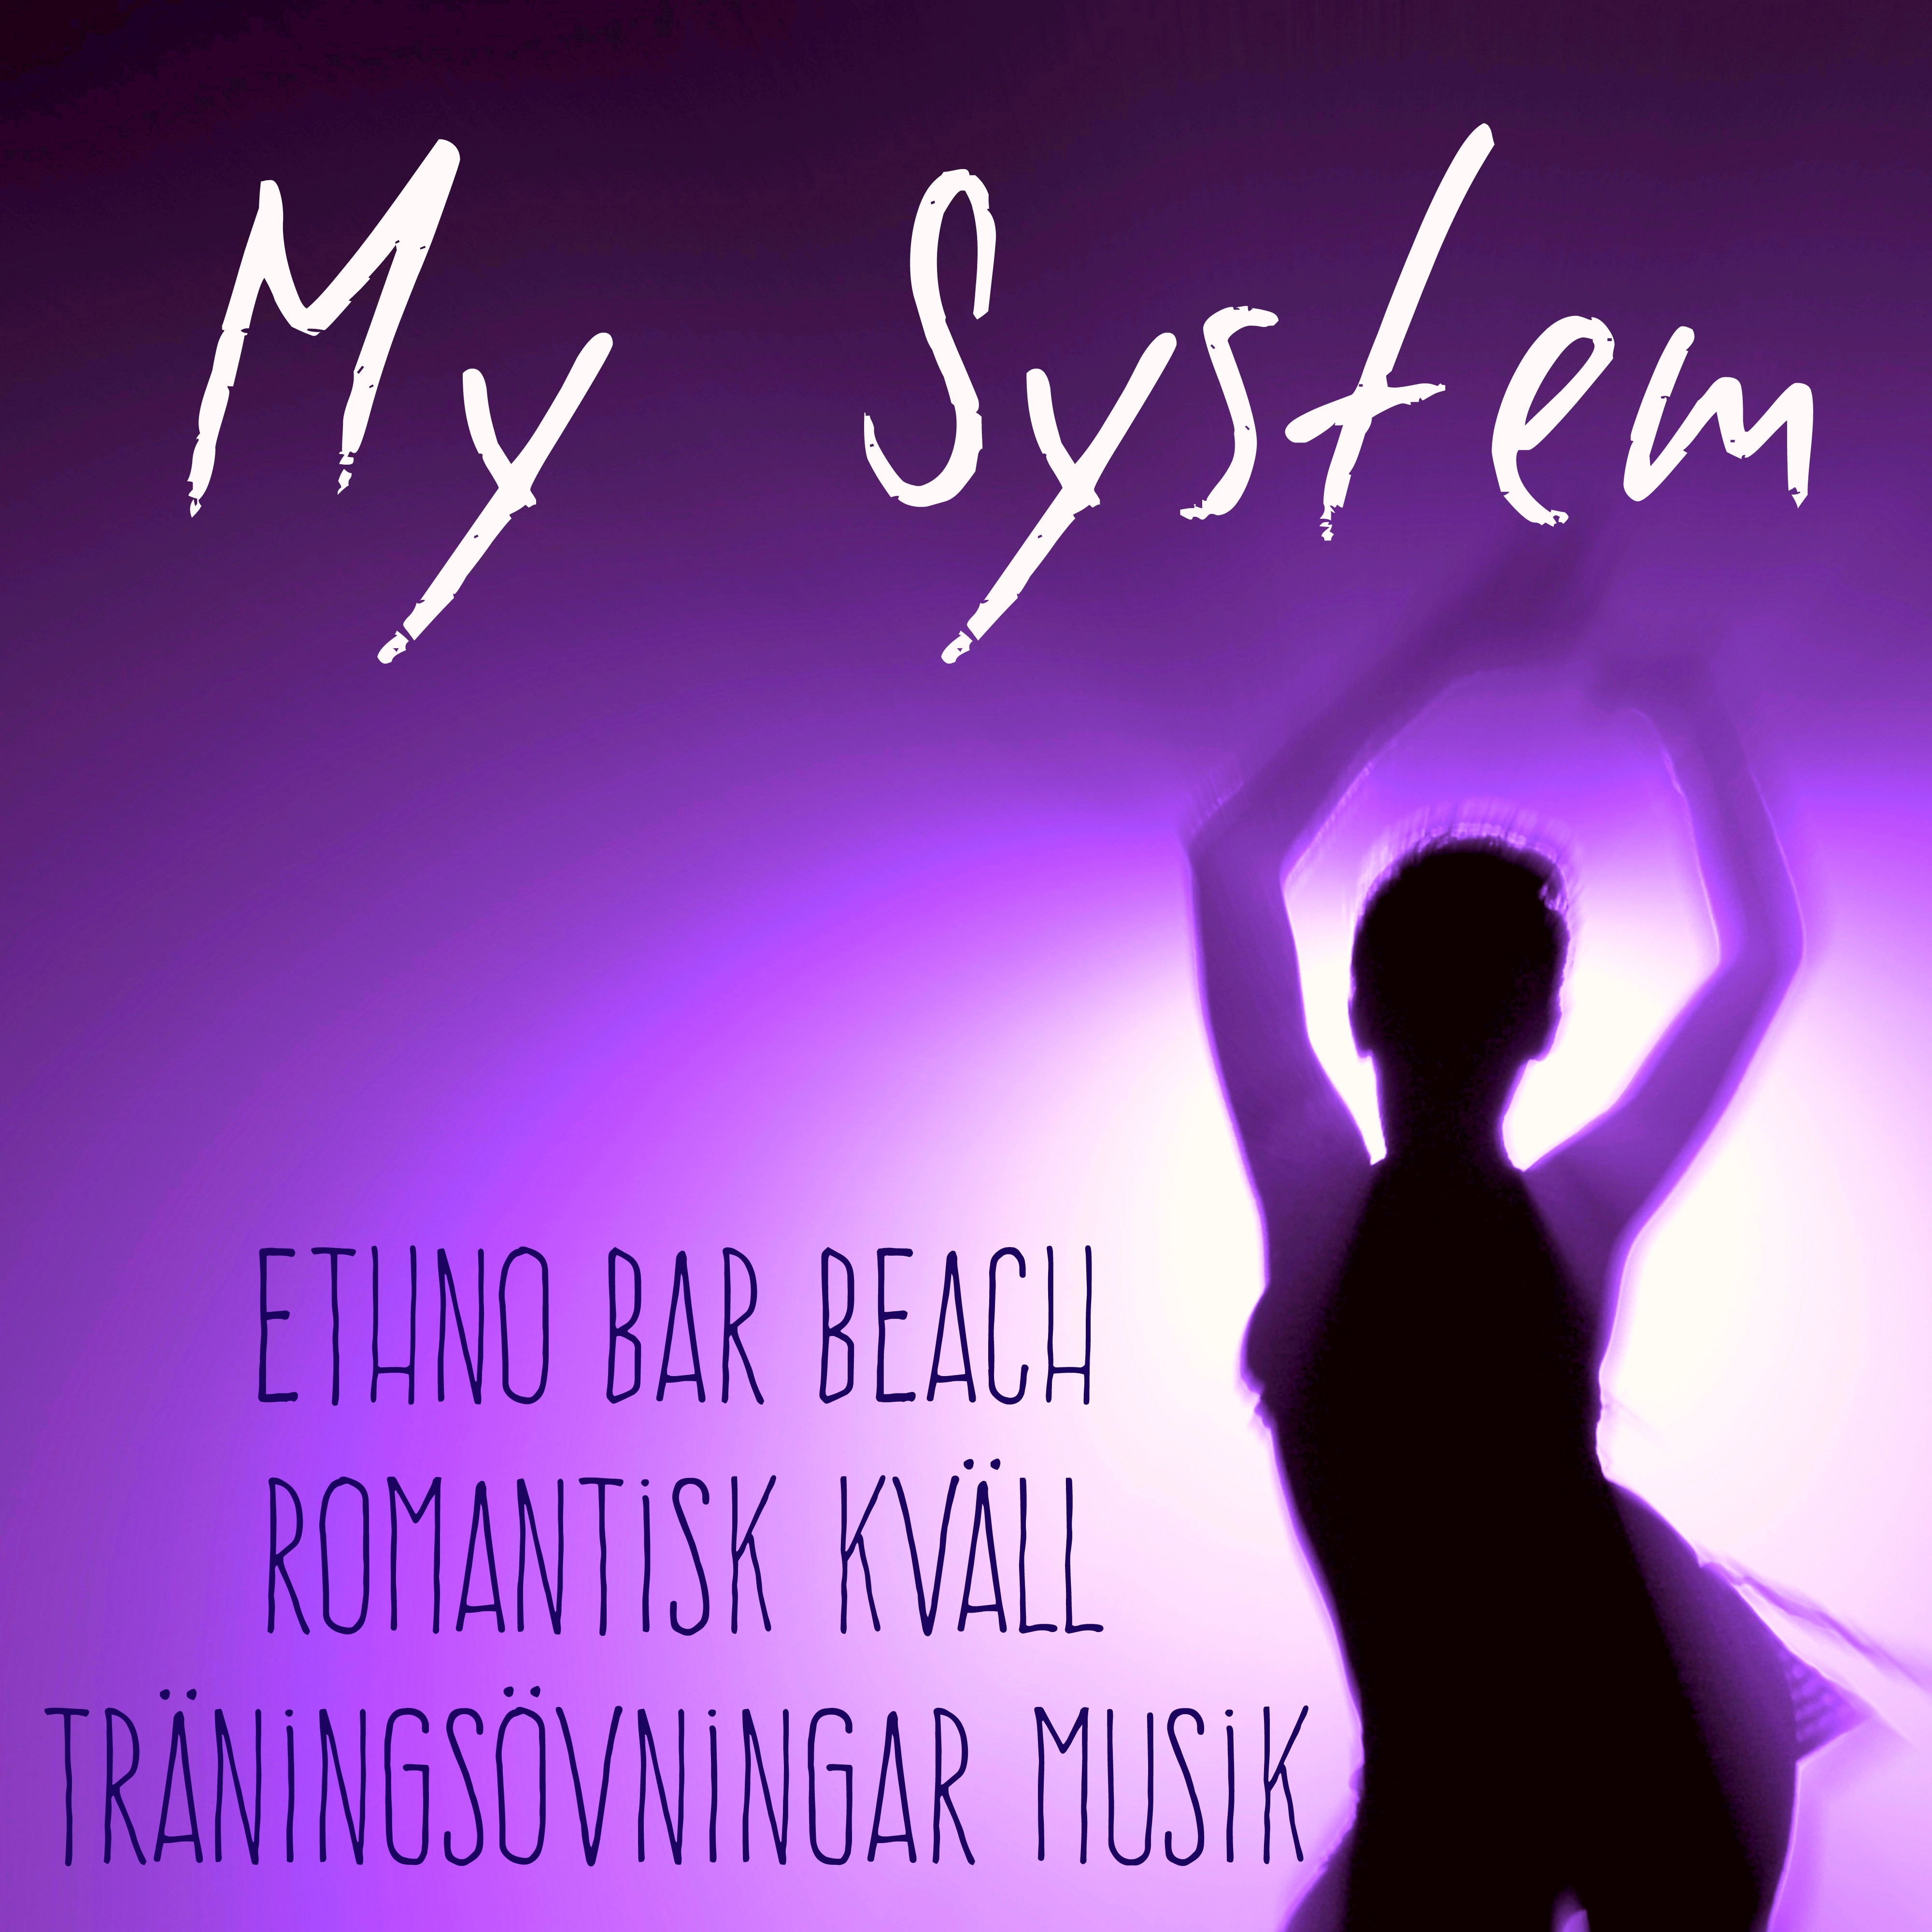 My System - Ethno Bar Beach Romantisk Kväll Träningsövningar Musik med Lounge Chill House Ljud